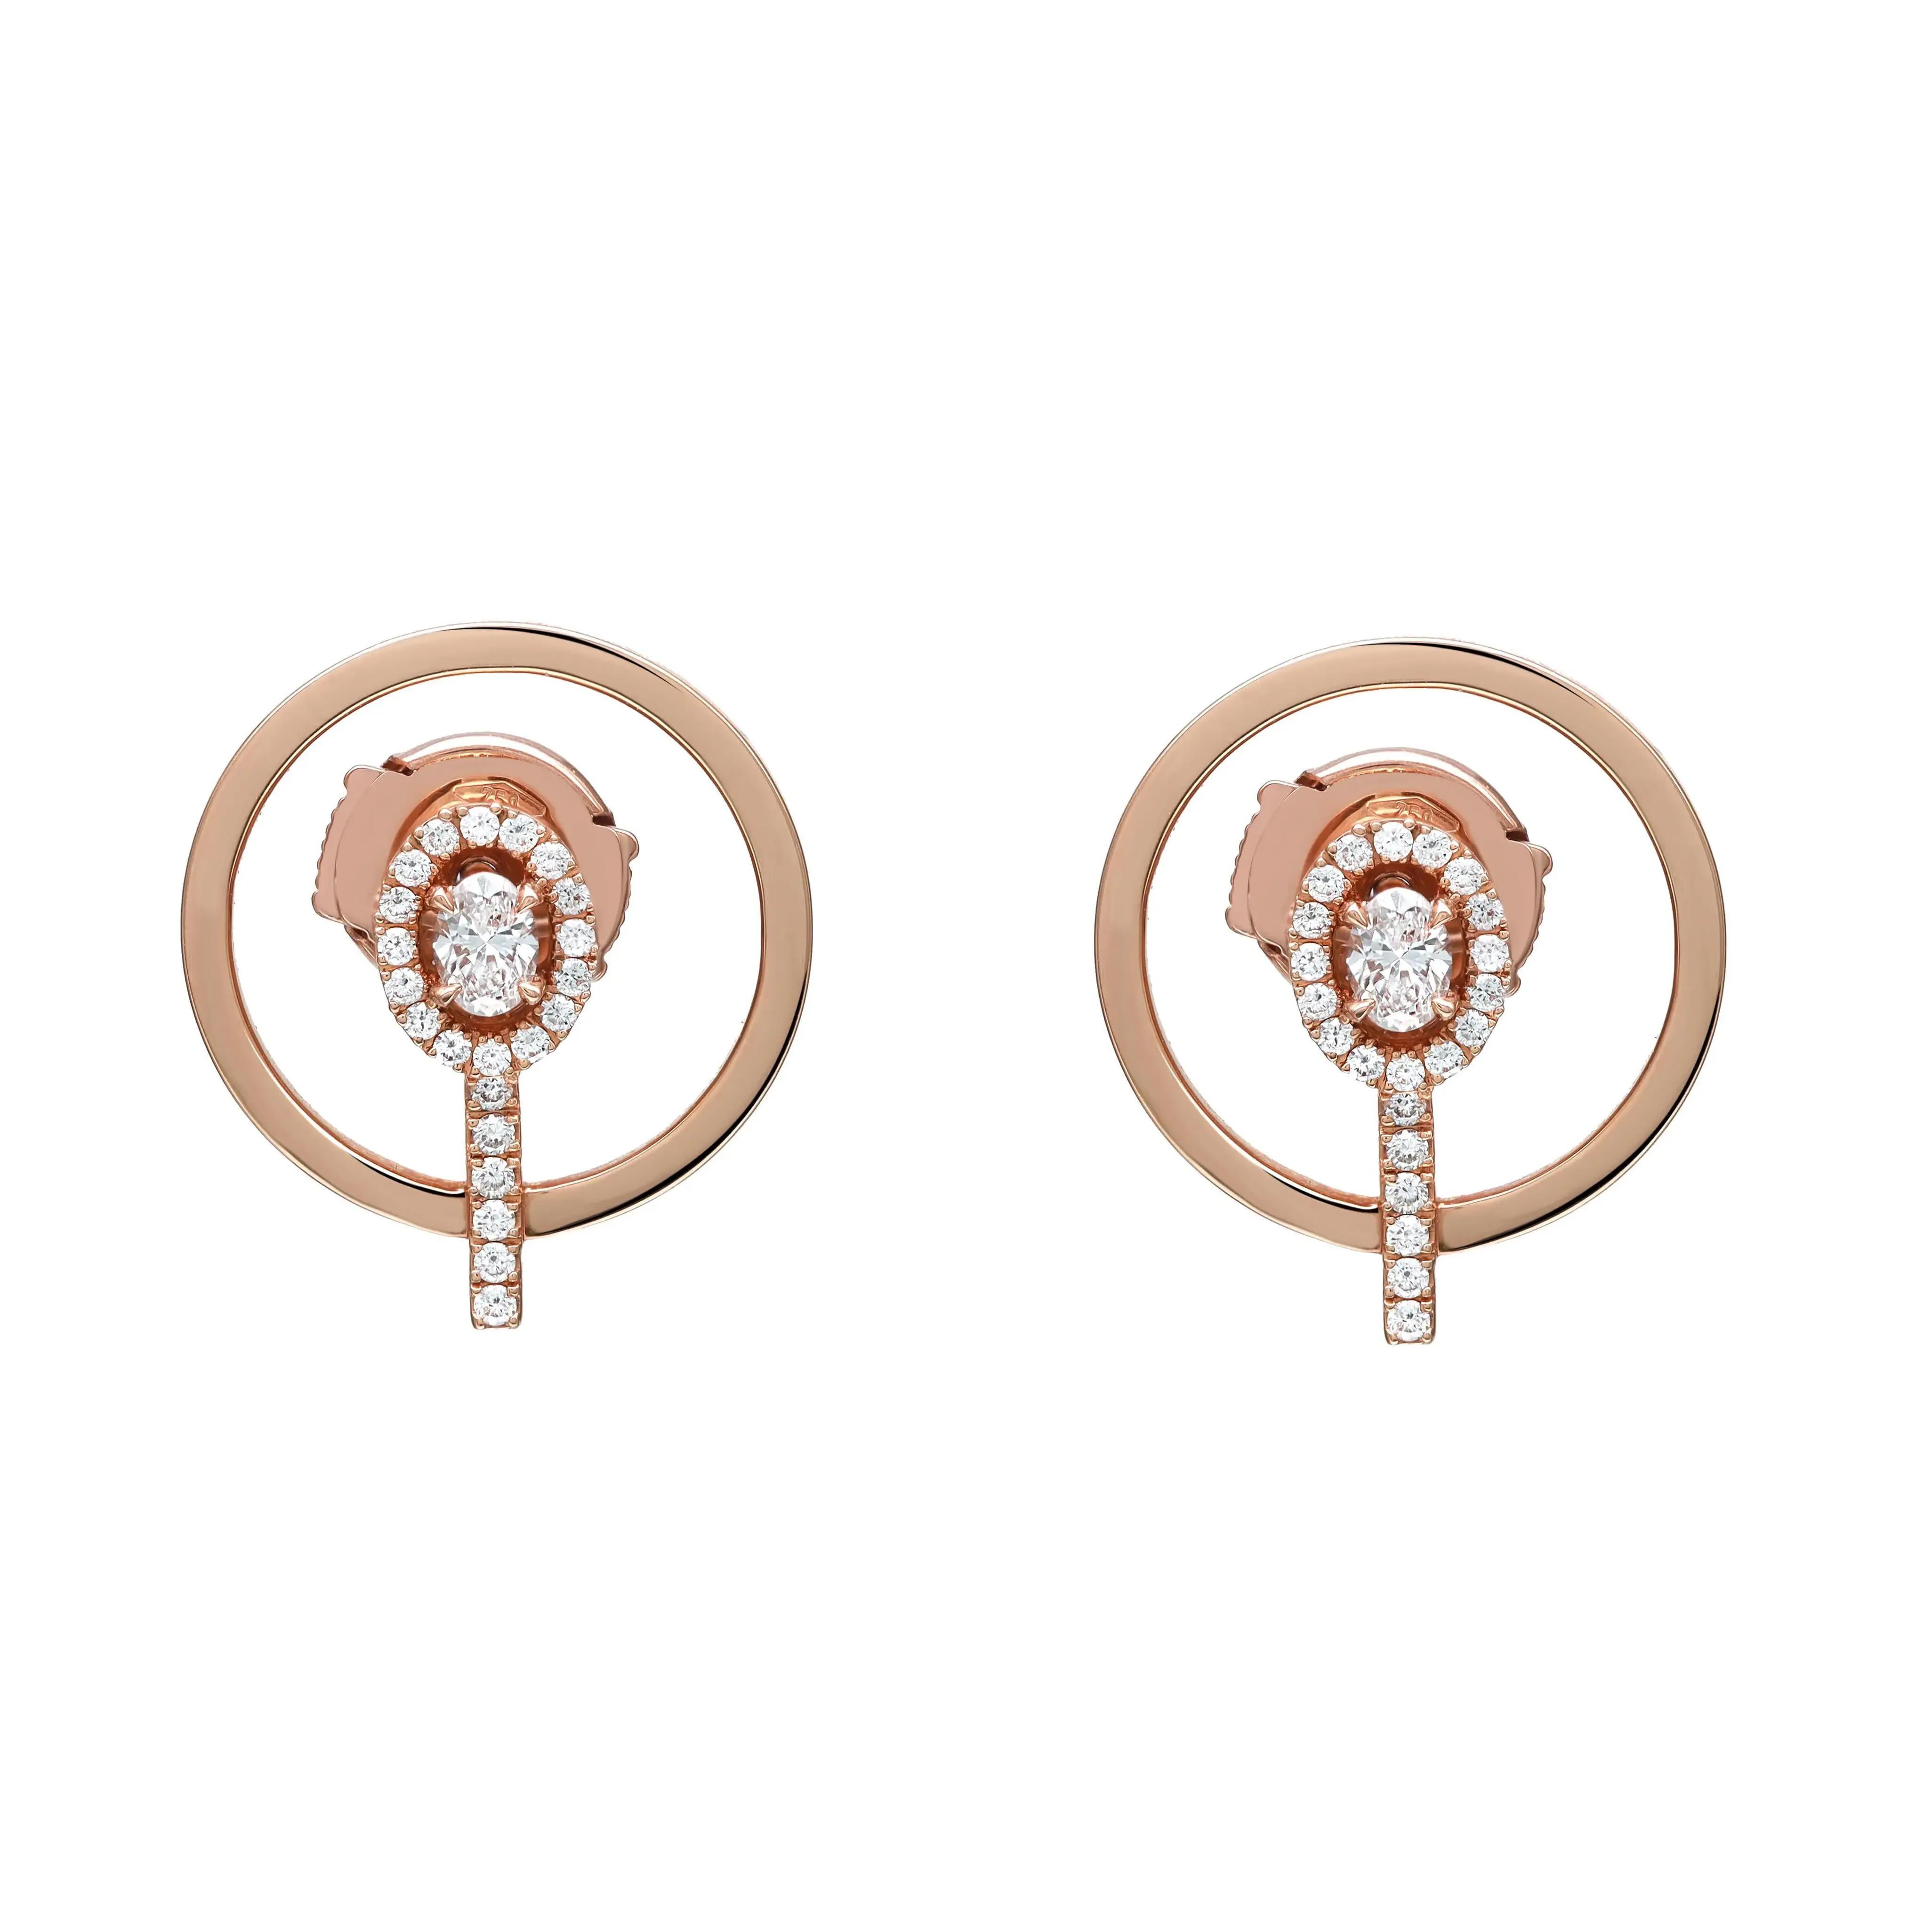 Messika Clous d'oreilles en or rose 18 carats avec diamants graphiques « Glam'Azone » 0,36 carat